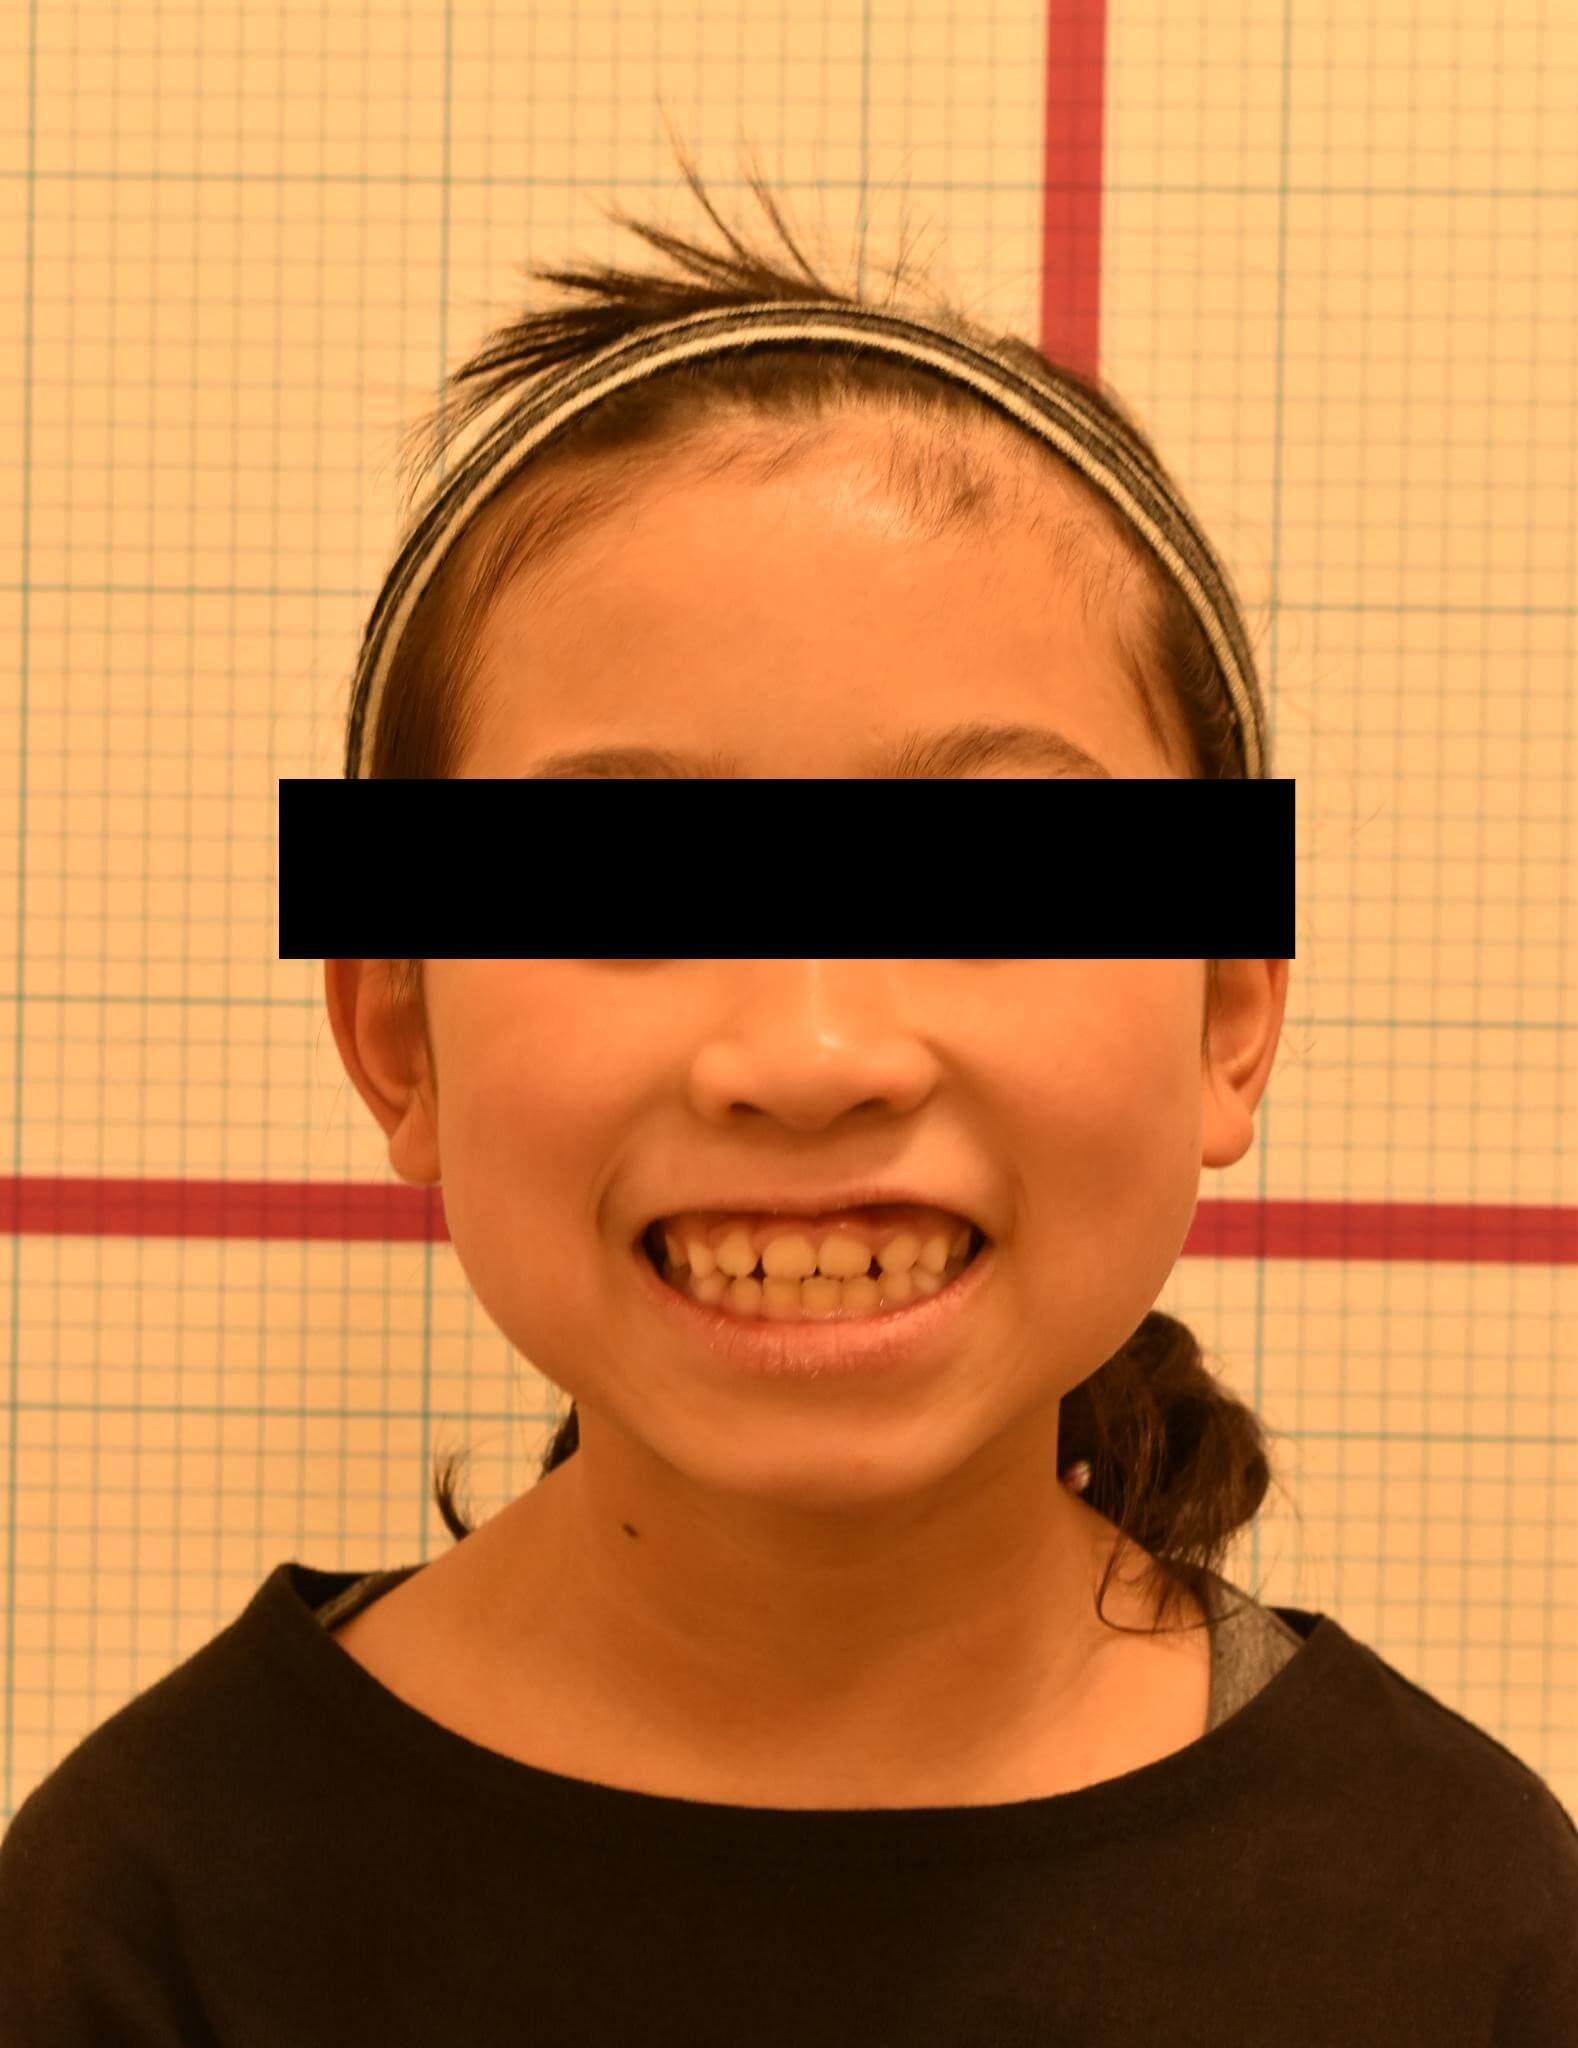 笑顔の写真もバイオブロックにて前方に拡大したことによって歯茎の見え方が変わった。